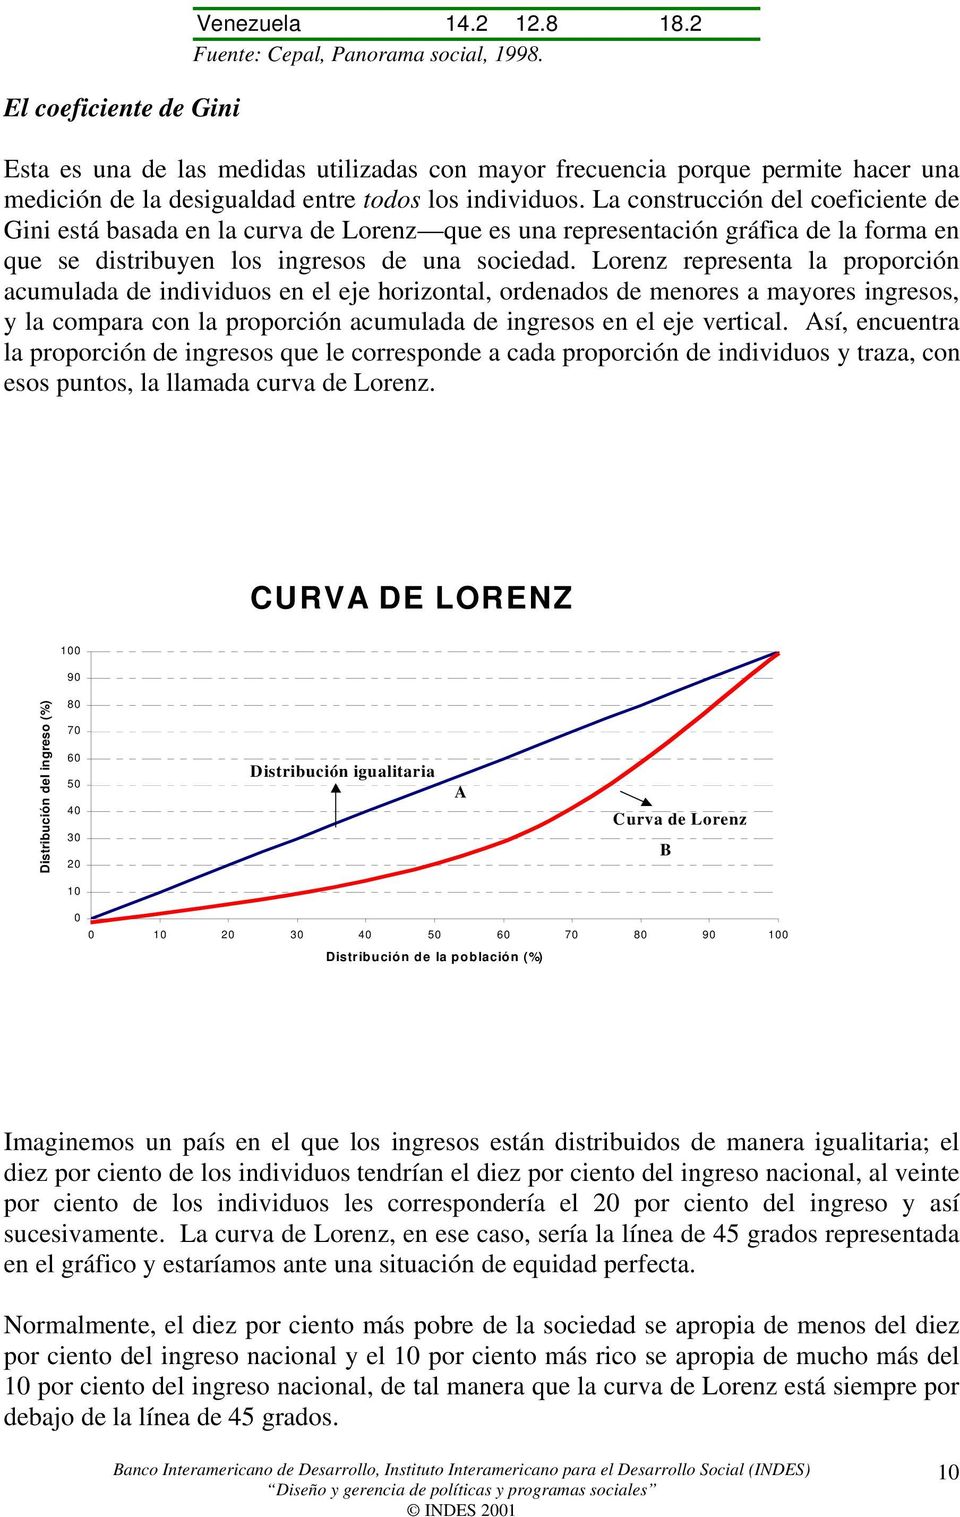 La construcción del coeficiente de Gini está basada en la curva de Lorenz que es una representación gráfica de la forma en que se distribuyen los ingresos de una sociedad.